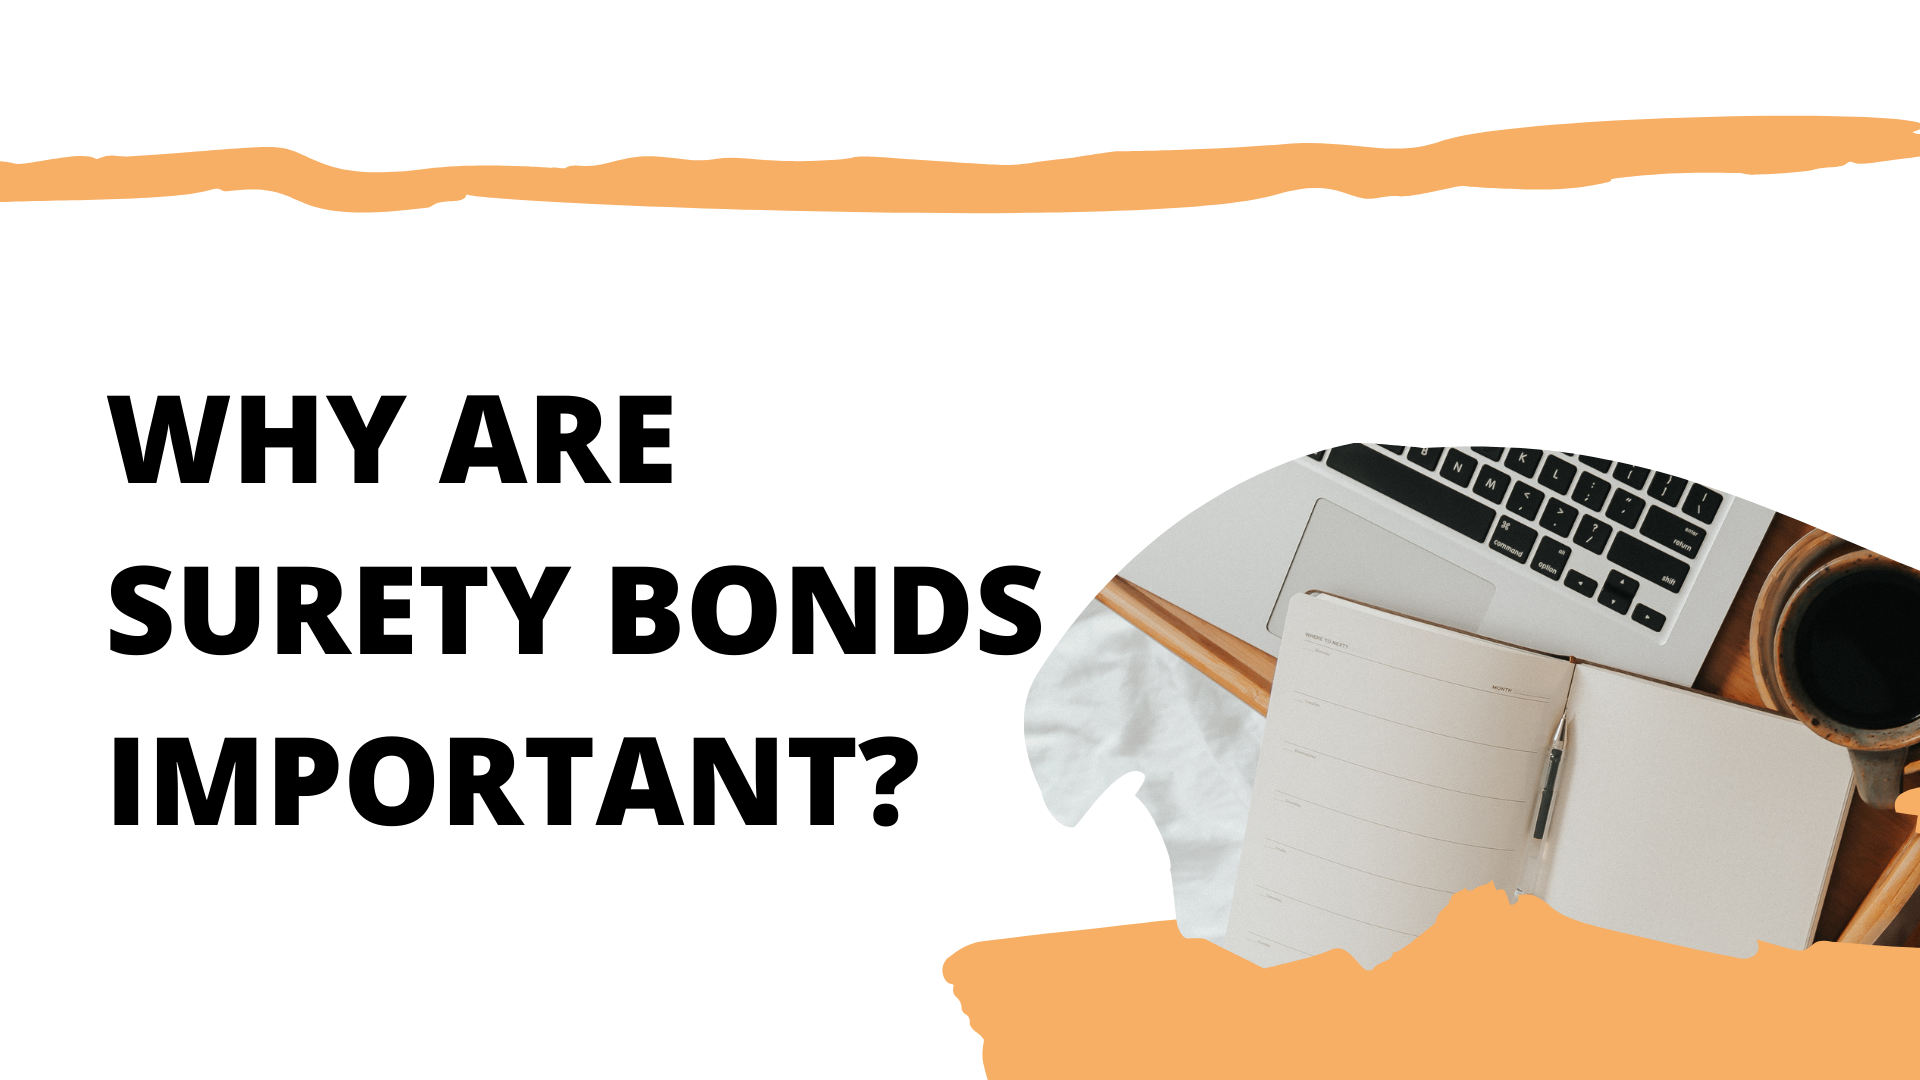 surety bond - How to define surety bonds - work space